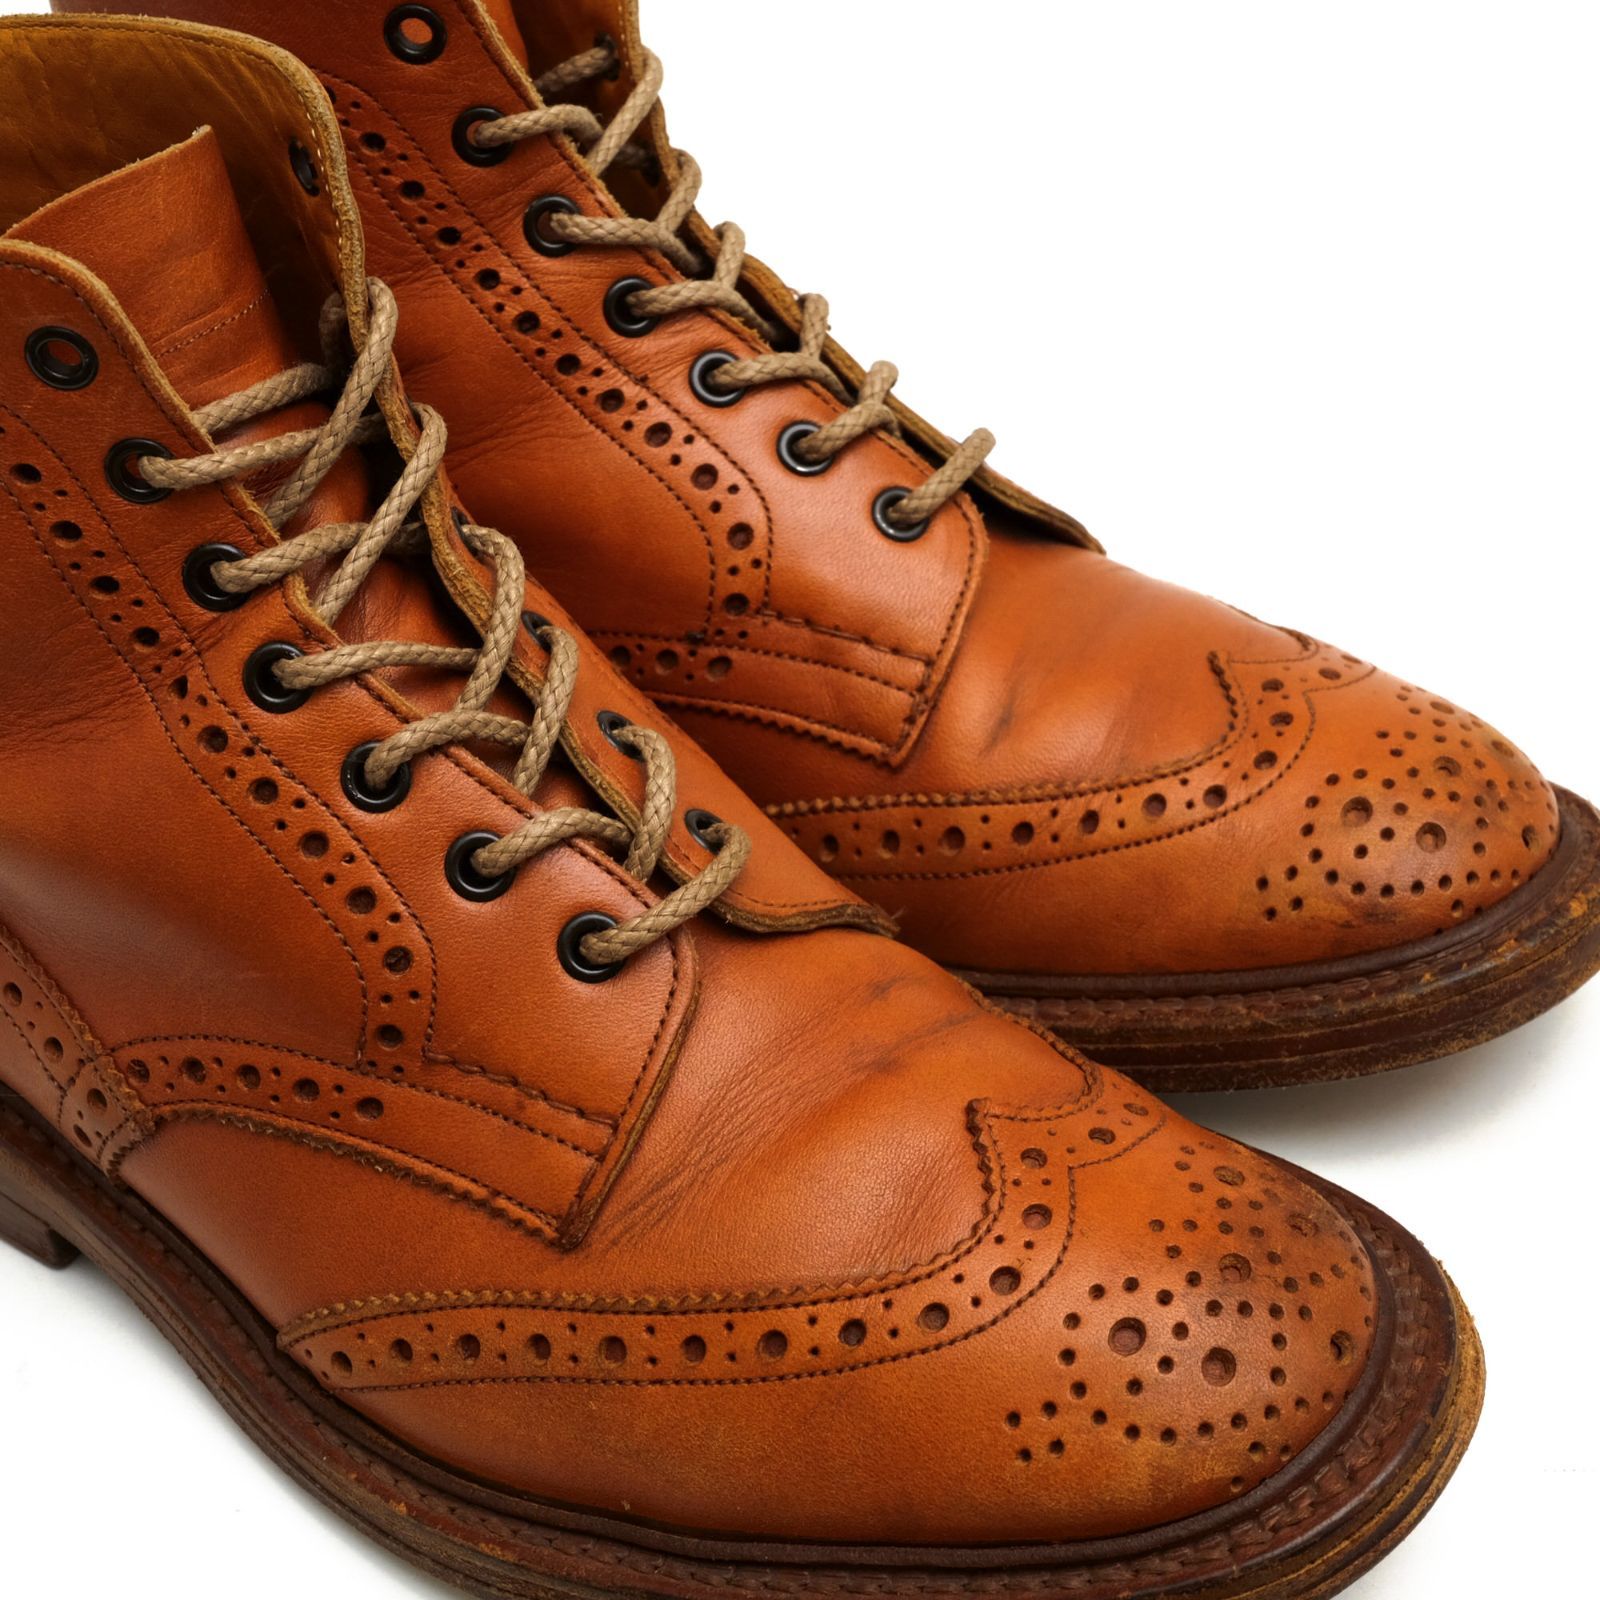 靴/シューズトリッカーズ／Tricker's レースアップブーツ シューズ 靴 メンズ 男性 男性用レザー 革 本革 ブラウン 茶  M2508 MALTON モールトン Brogue Boots ダブルソール カントリーブーツ ウイングチップ 定番 グッドイヤーウェルト製法